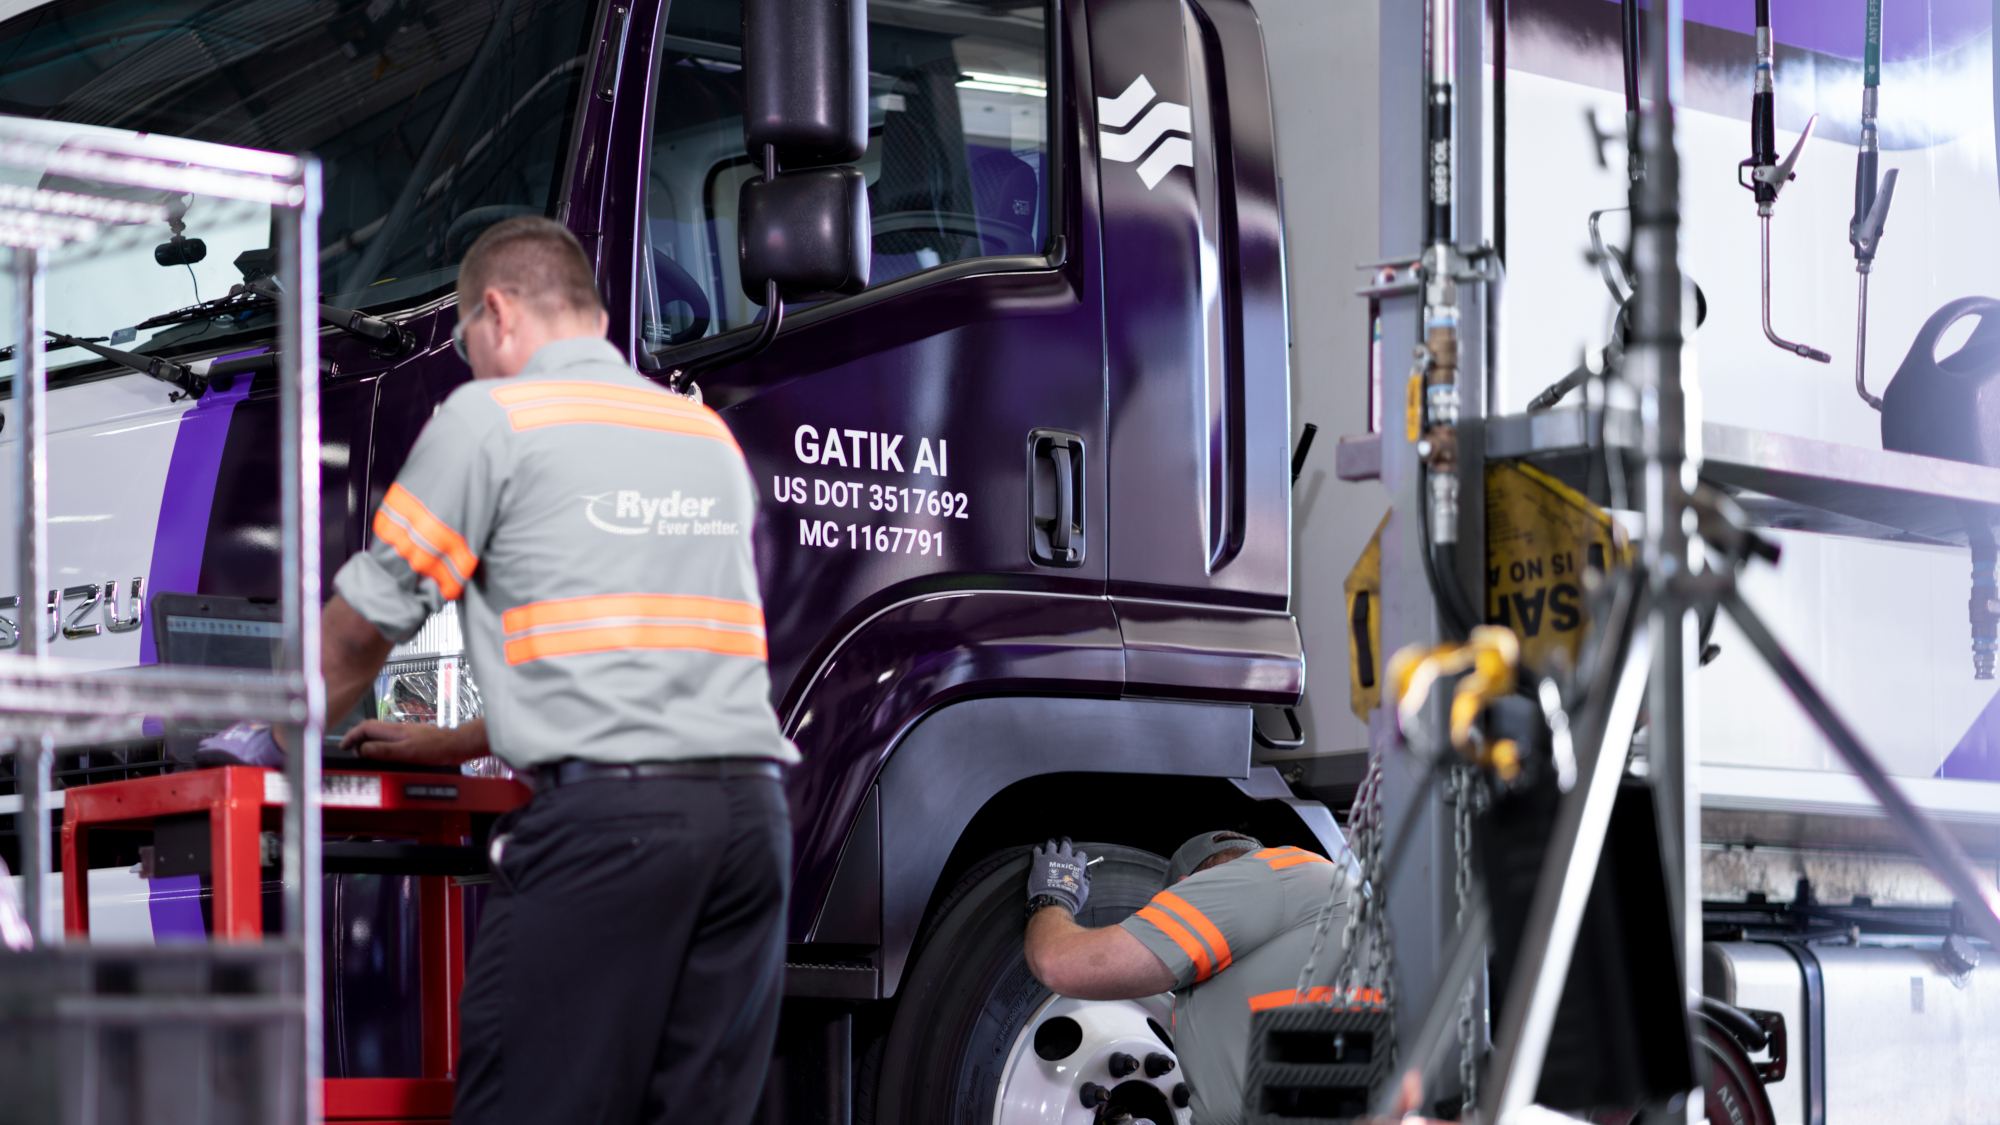 Embark Trucks tallies 14,200 prelaunch reservations for driverless software  - FreightWaves